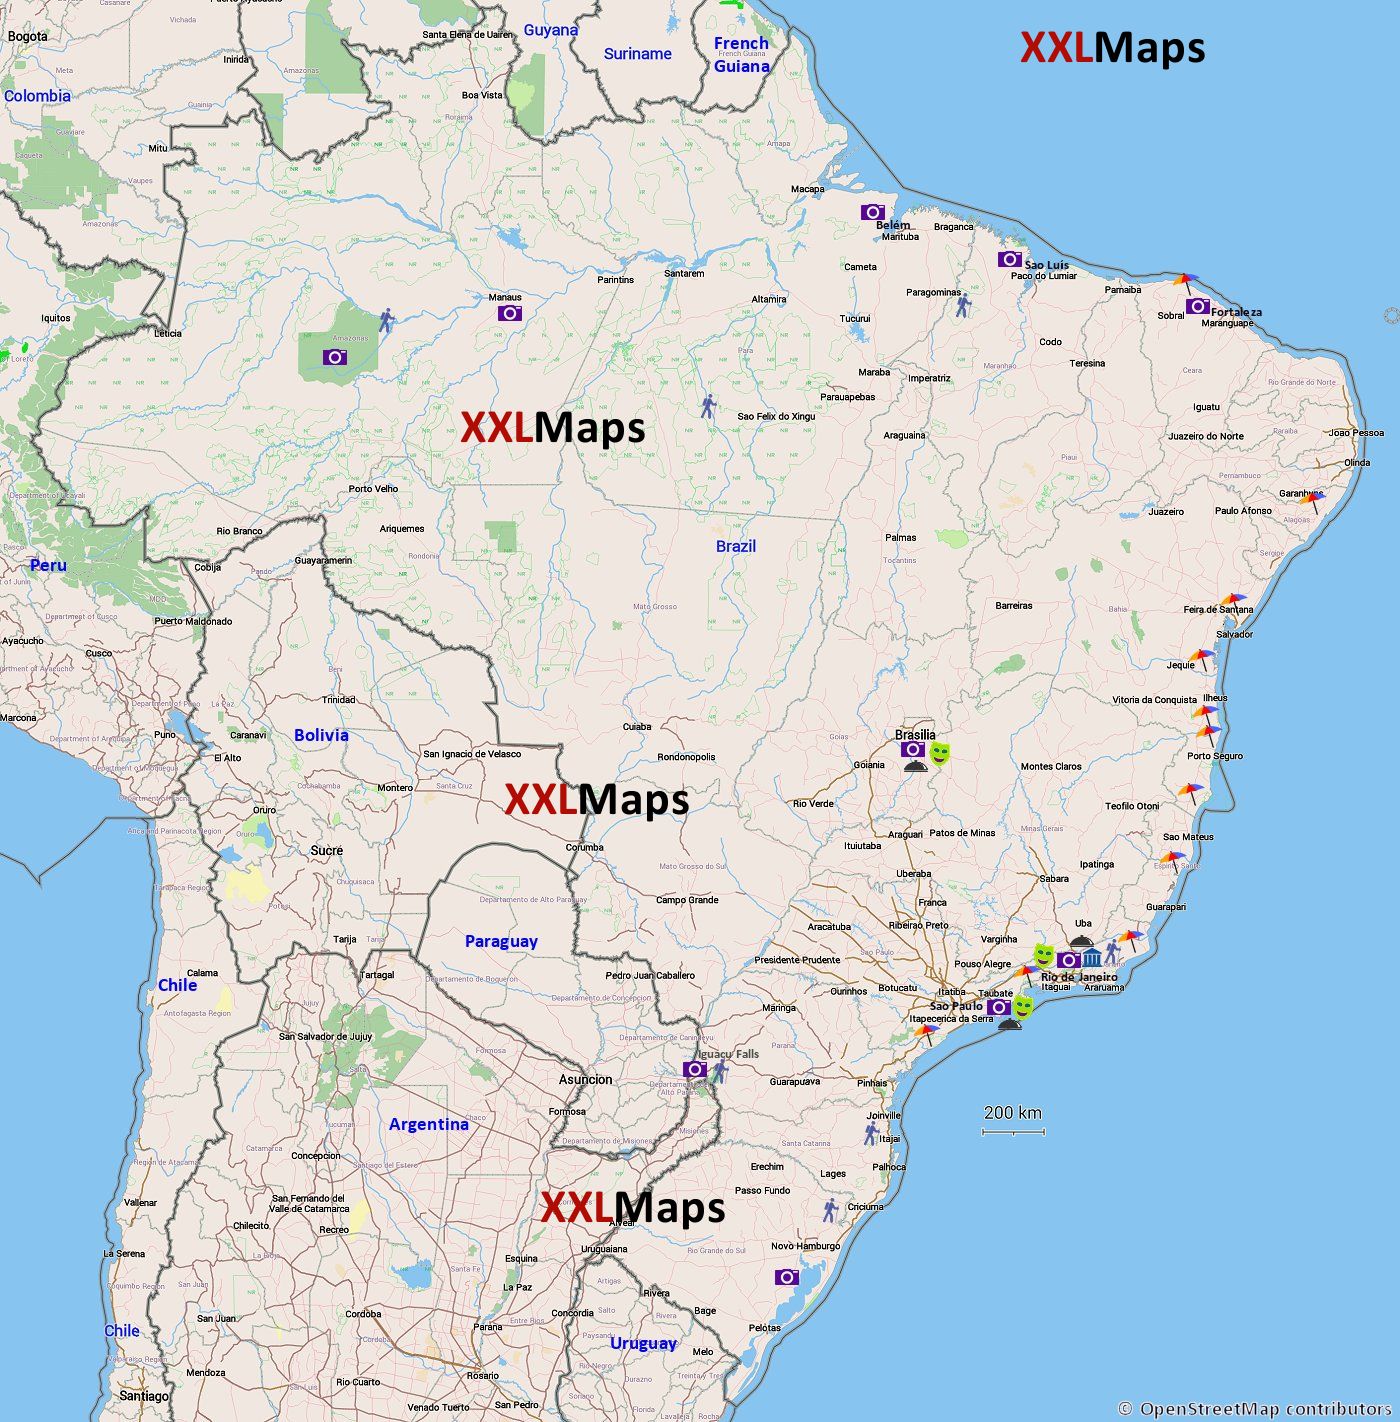 ブラジル無料の観光マップ